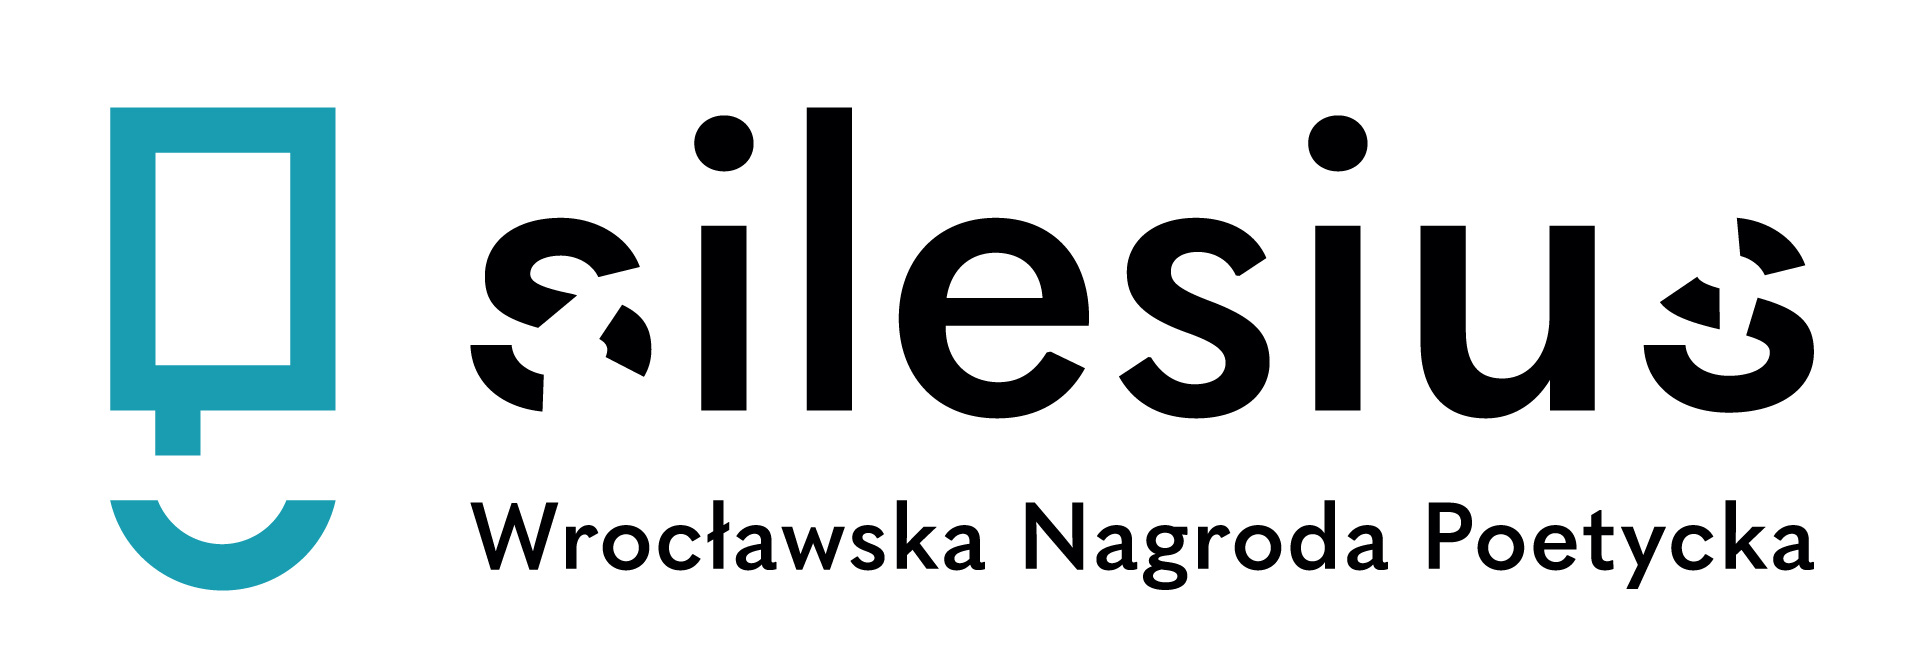 Wrocławska Nagroda Poetycka Silesius